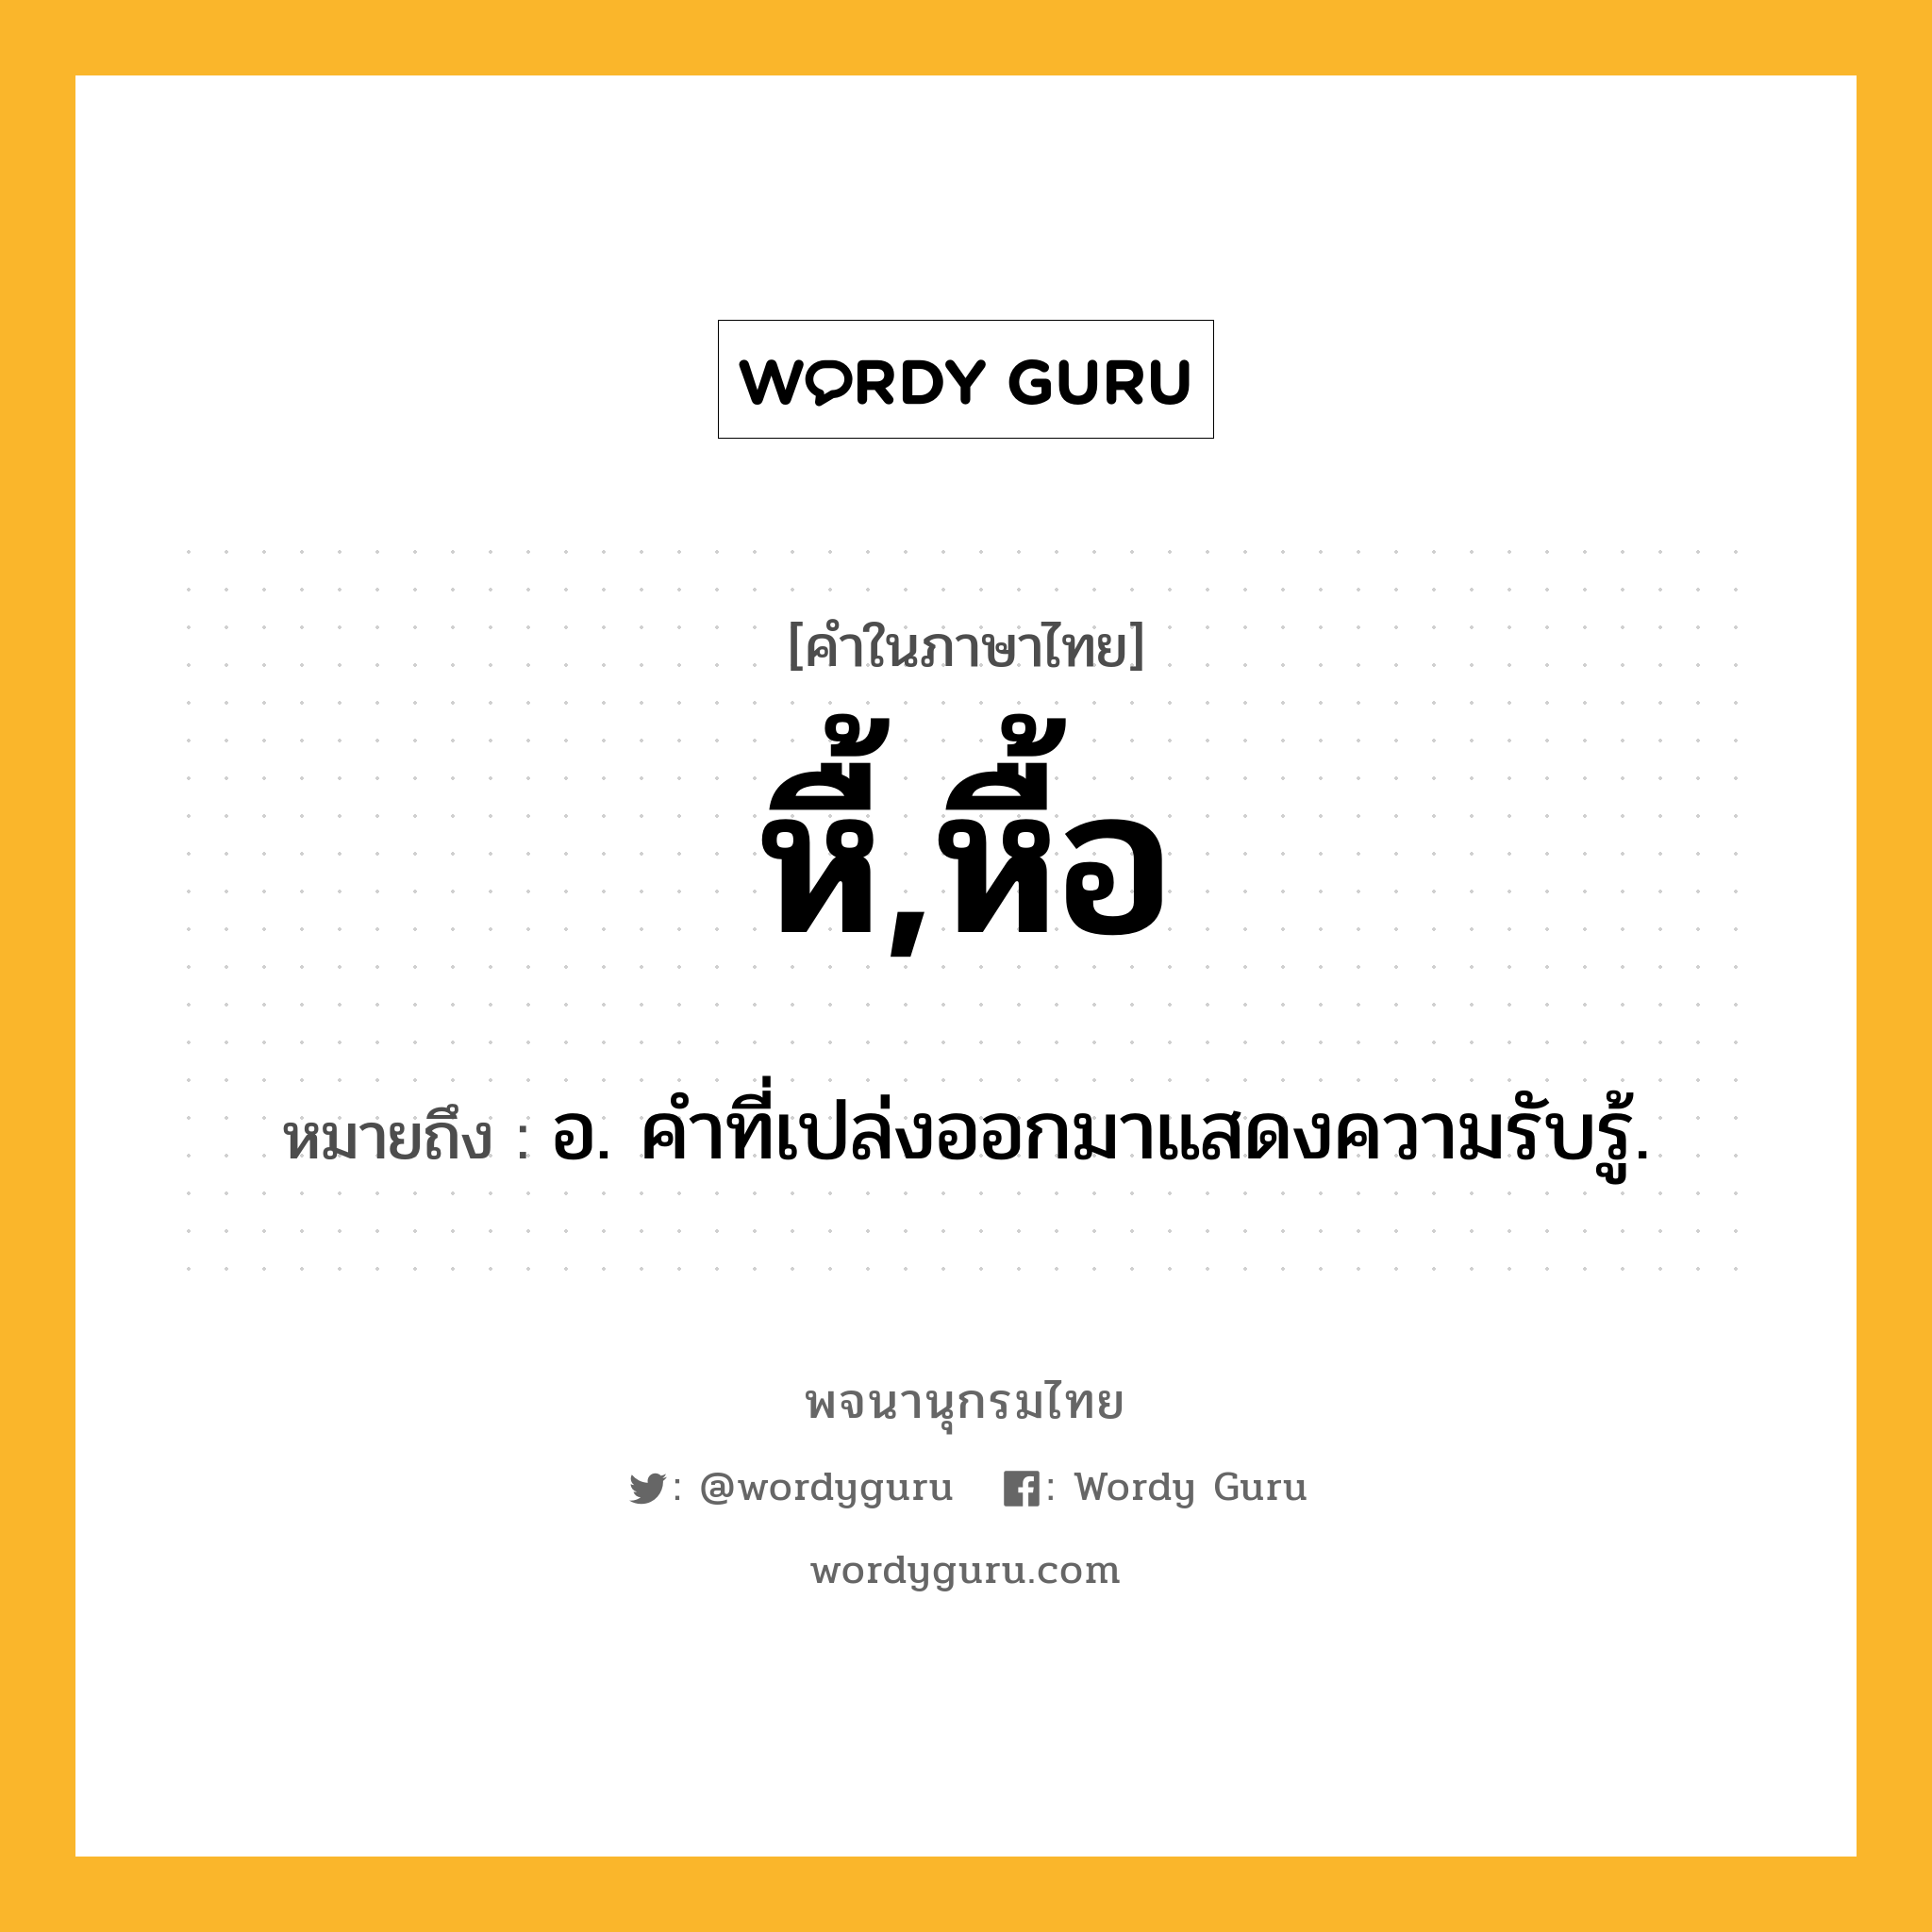 หื้,หื้อ ความหมาย หมายถึงอะไร?, คำในภาษาไทย หื้,หื้อ หมายถึง อ. คำที่เปล่งออกมาแสดงความรับรู้.